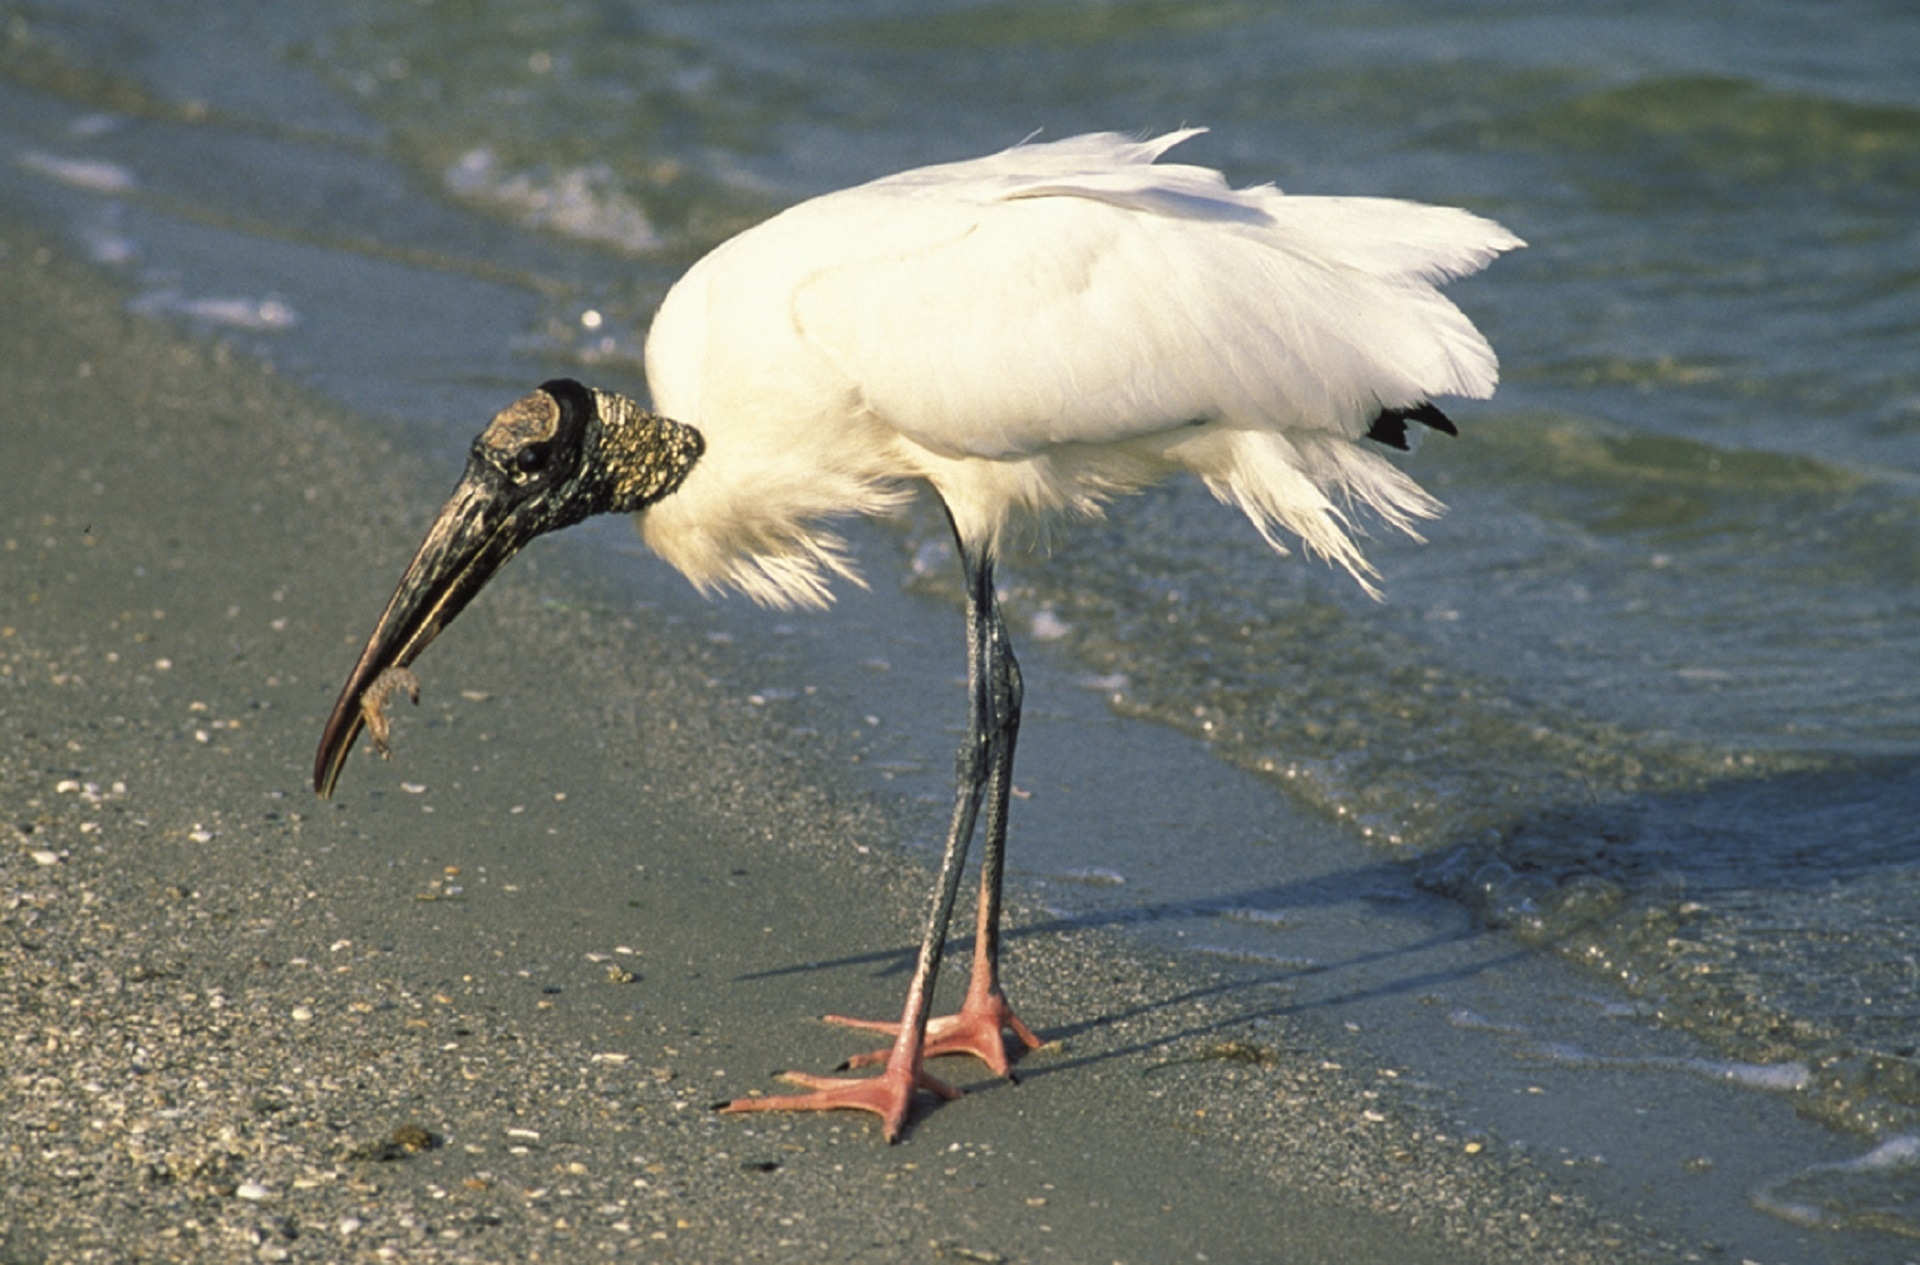 white long beak large bird